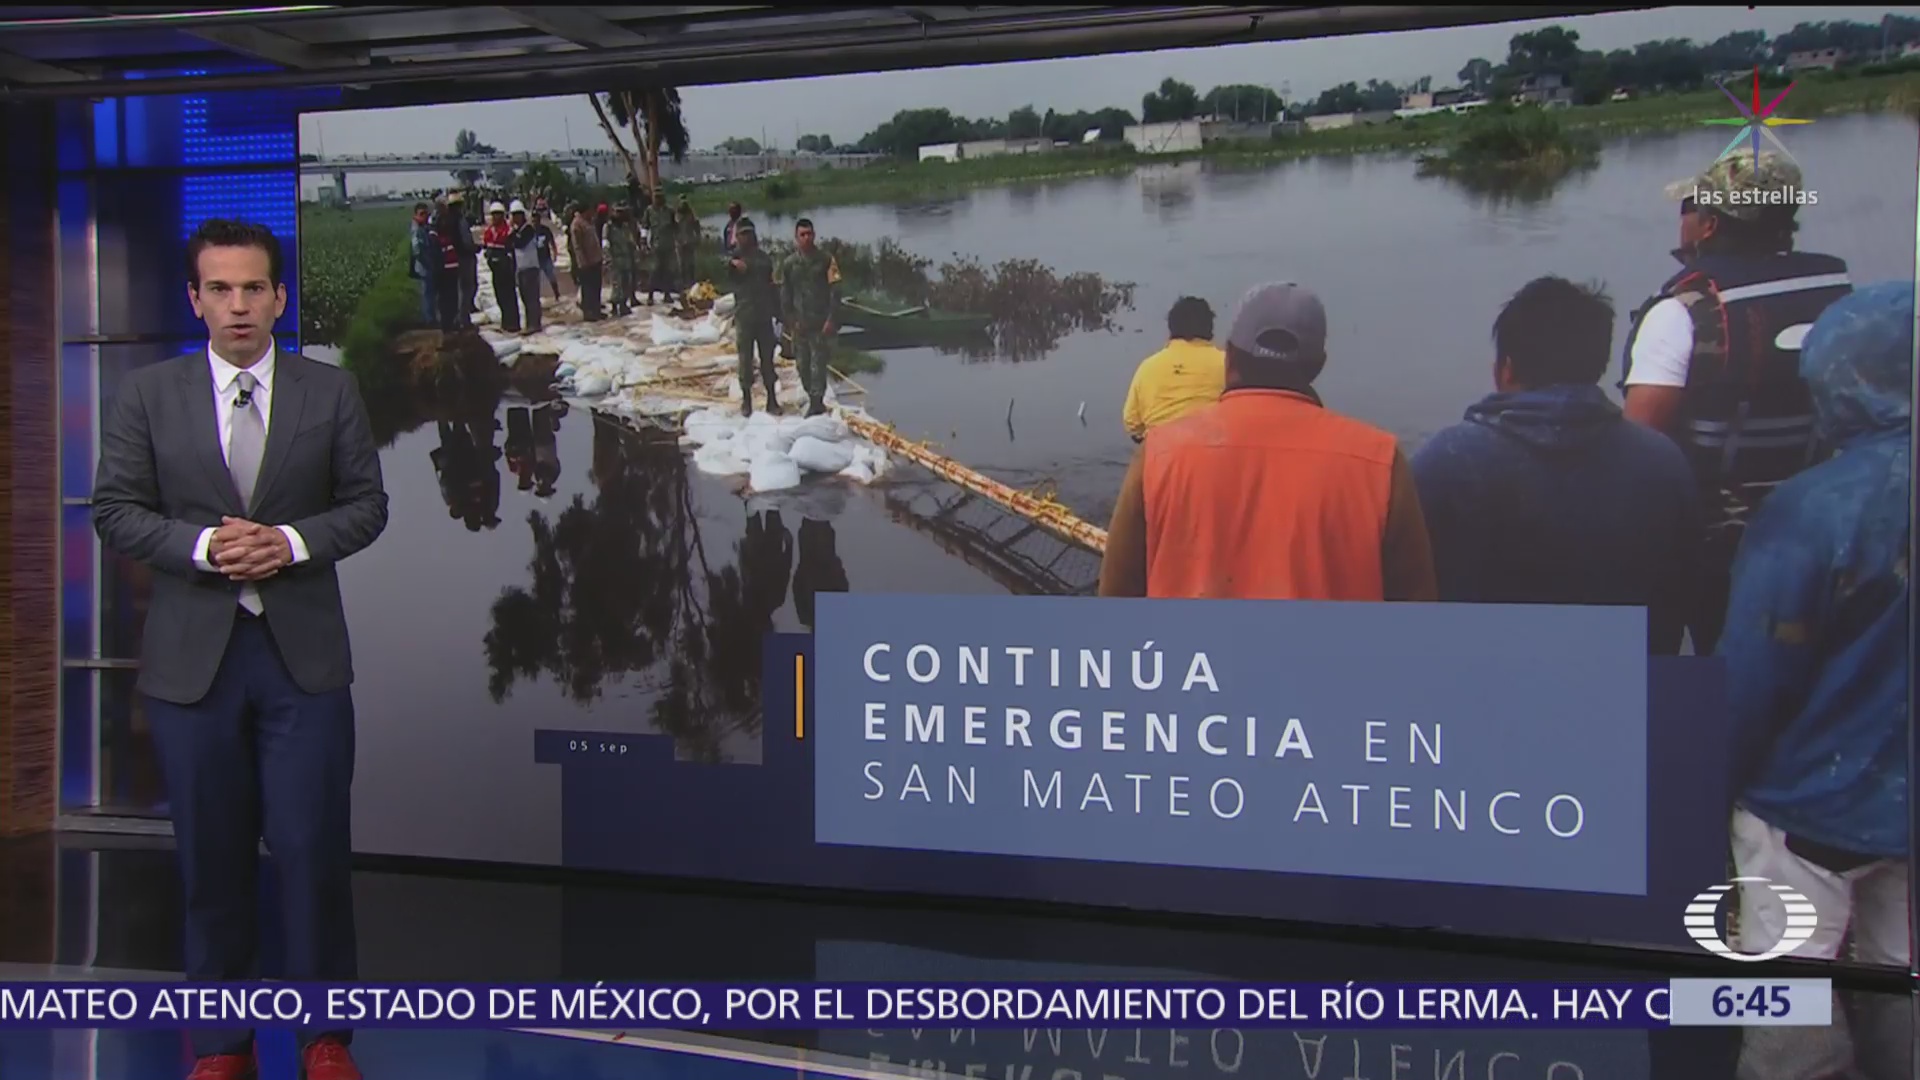 San Mateo Atenco, en emergencia por fisura del río Lerma